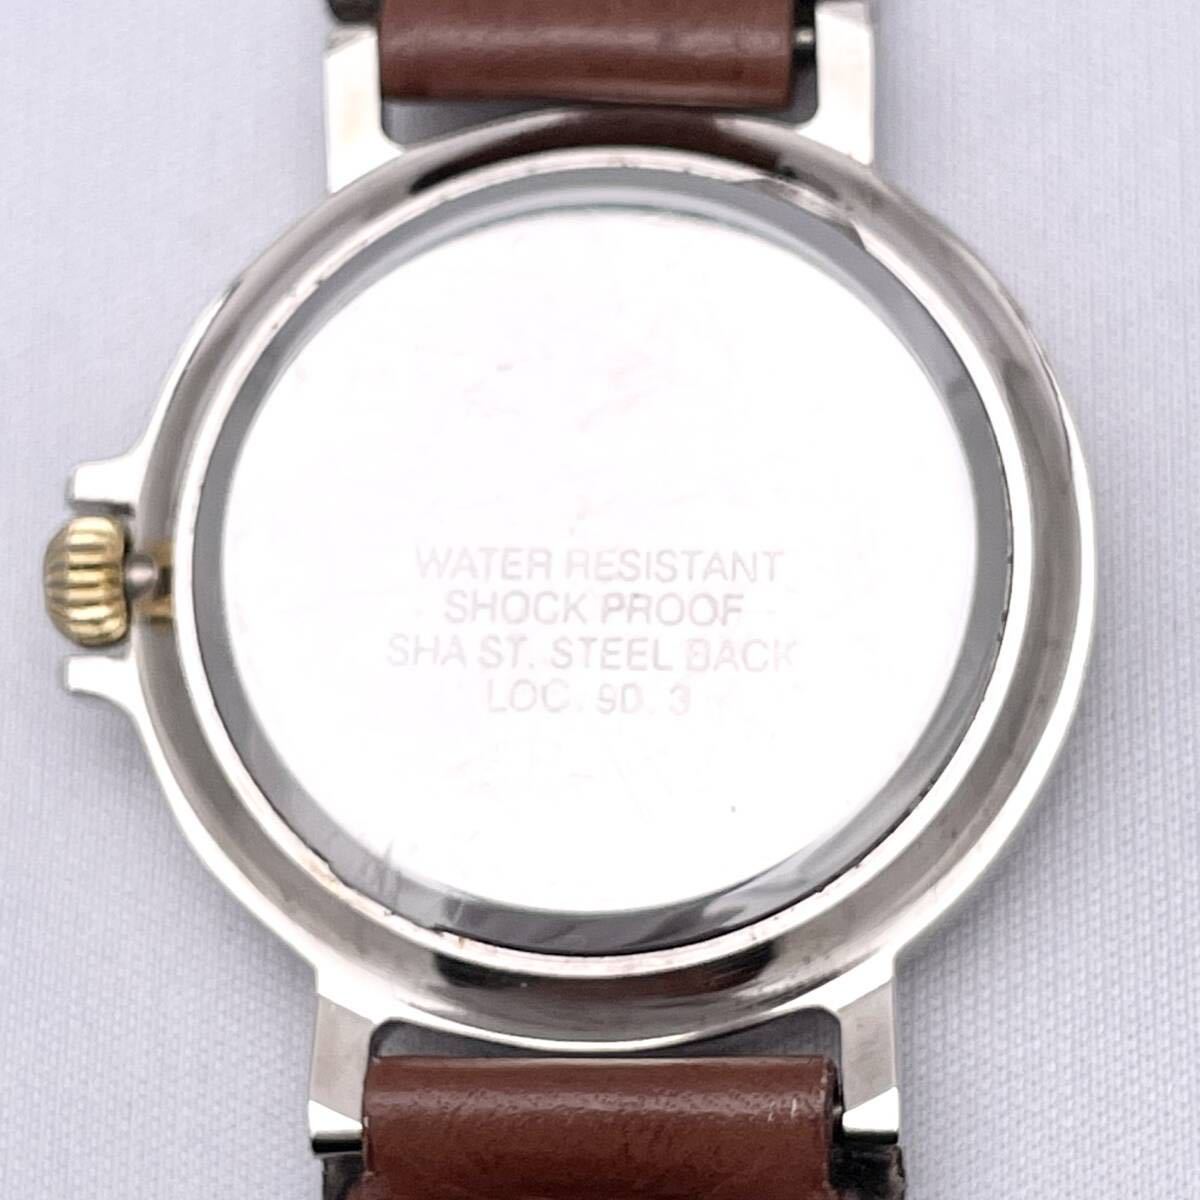 HUNTING WORLD ハンティングワールド ロゴデザイン 腕時計 ウォッチ クォーツ quartz ロゴベゼル デイト 金 ゴールド P25_画像8